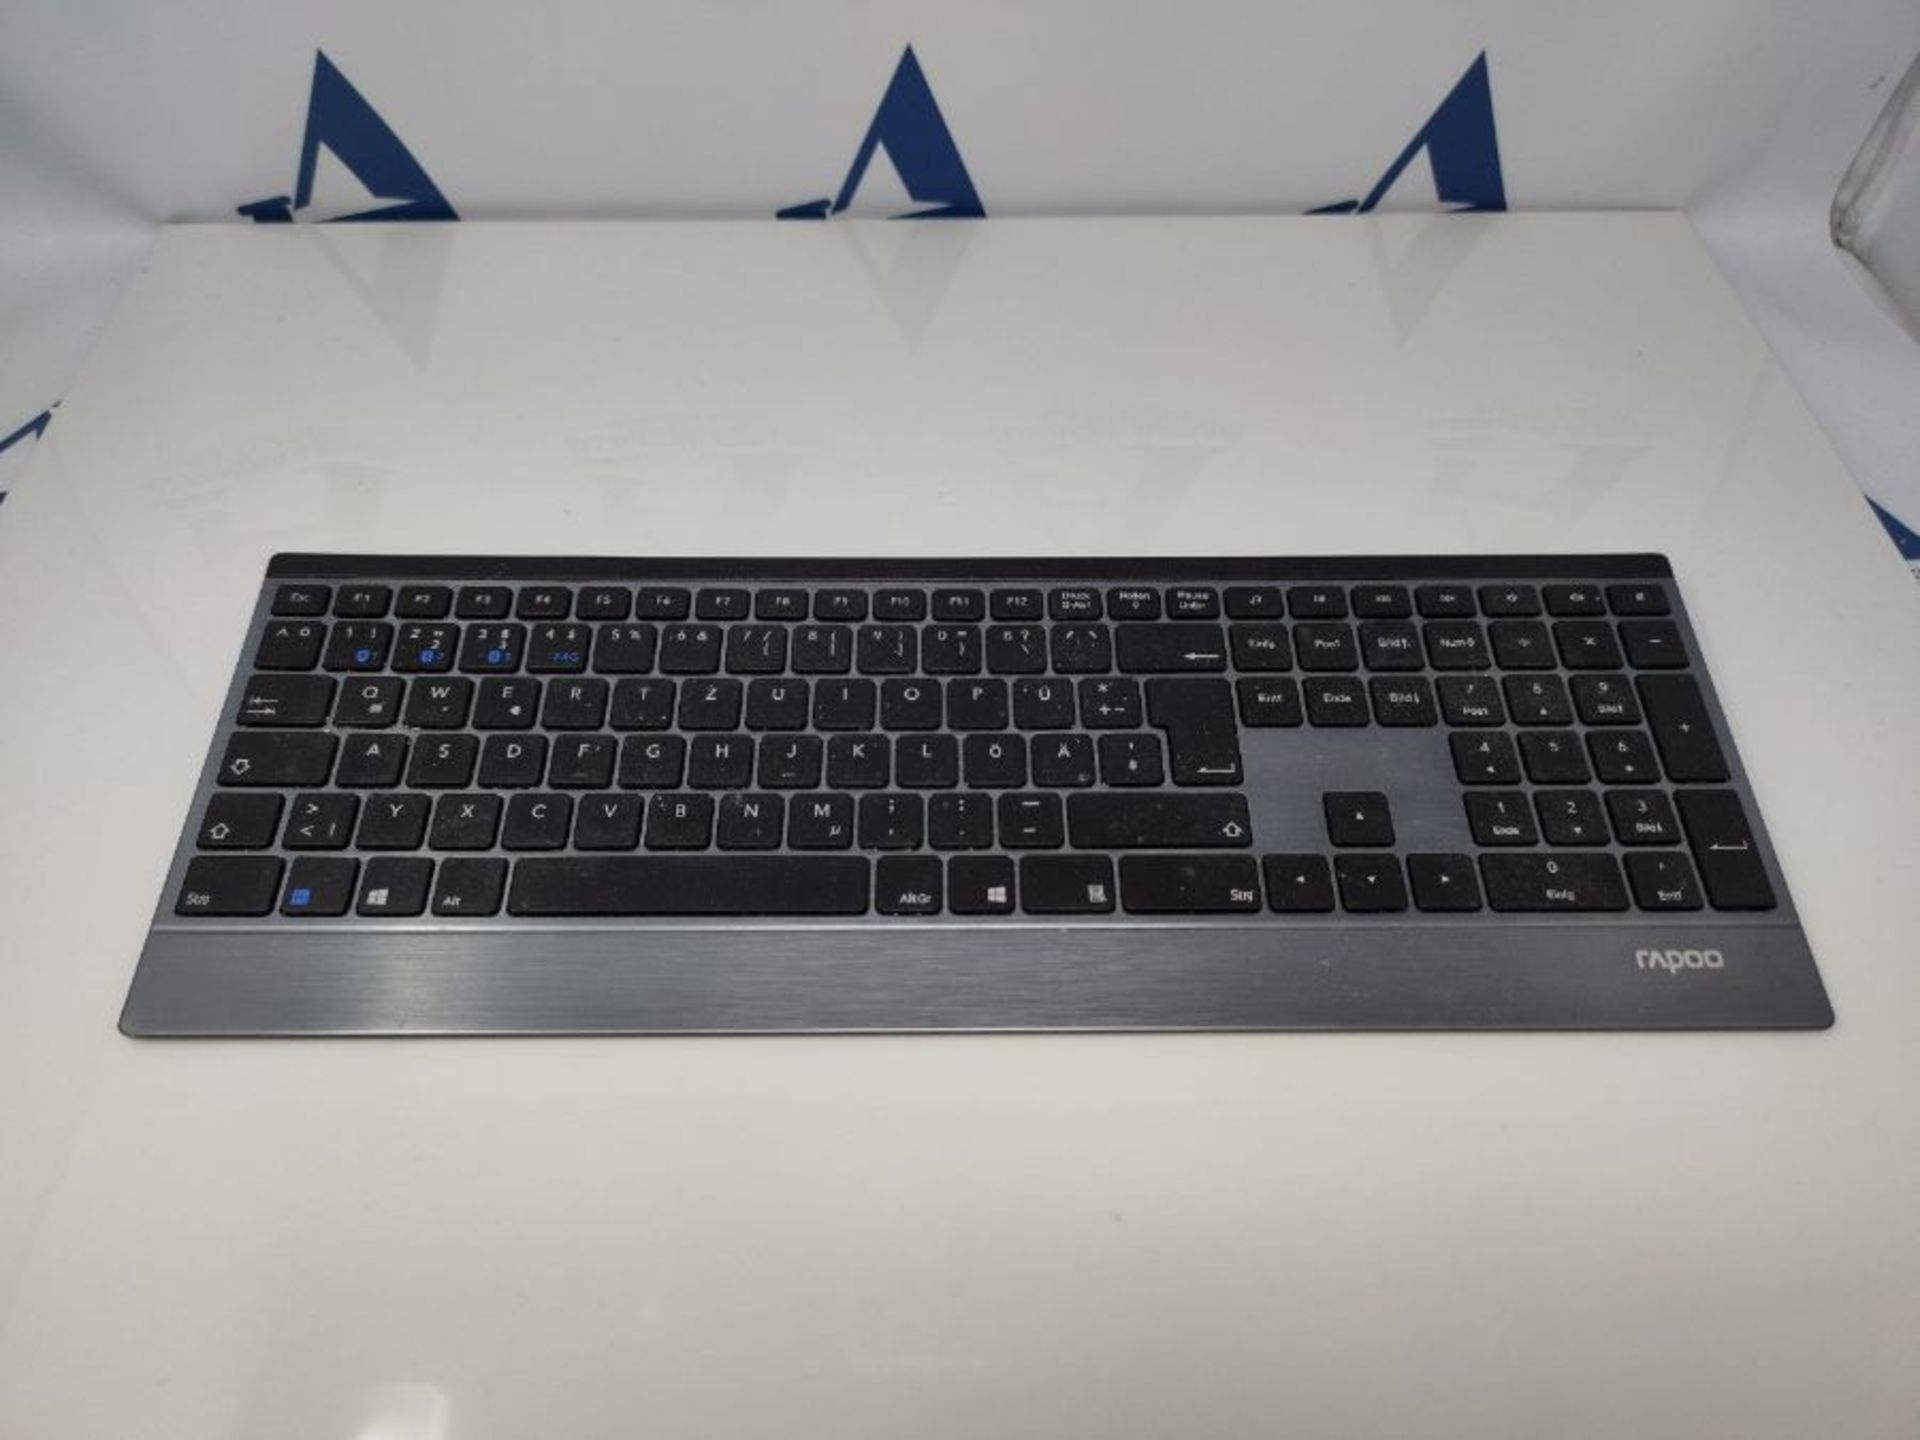 Rapoo E9500M kabellose Tastatur, Bluetooth und Wireless (2.4 GHz) via USB, mehrere Ger - Image 2 of 2